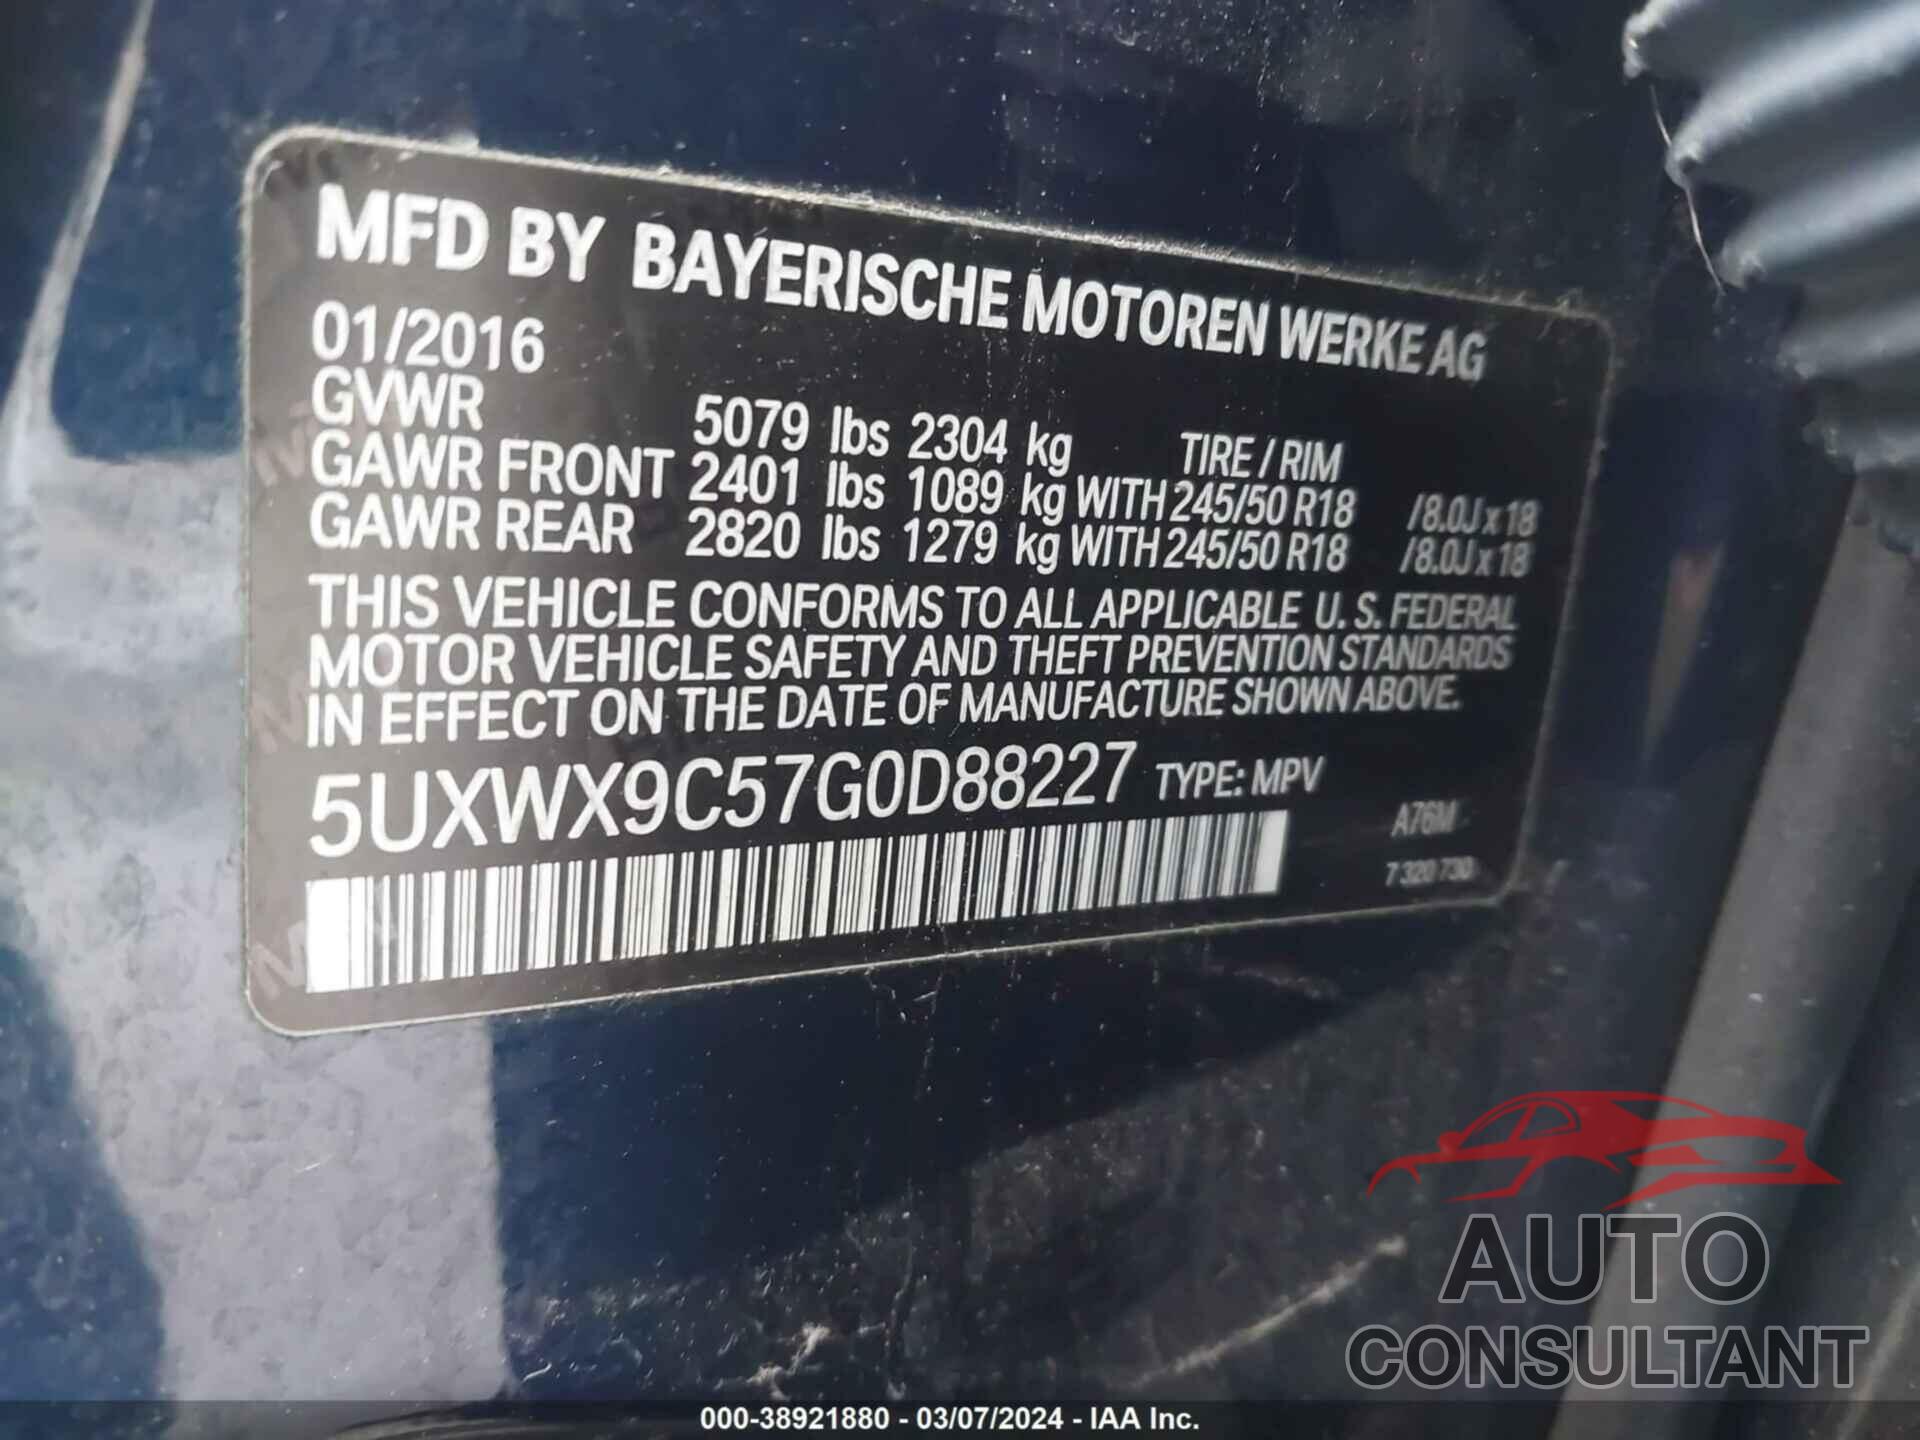 BMW X3 2016 - 5UXWX9C57G0D88227